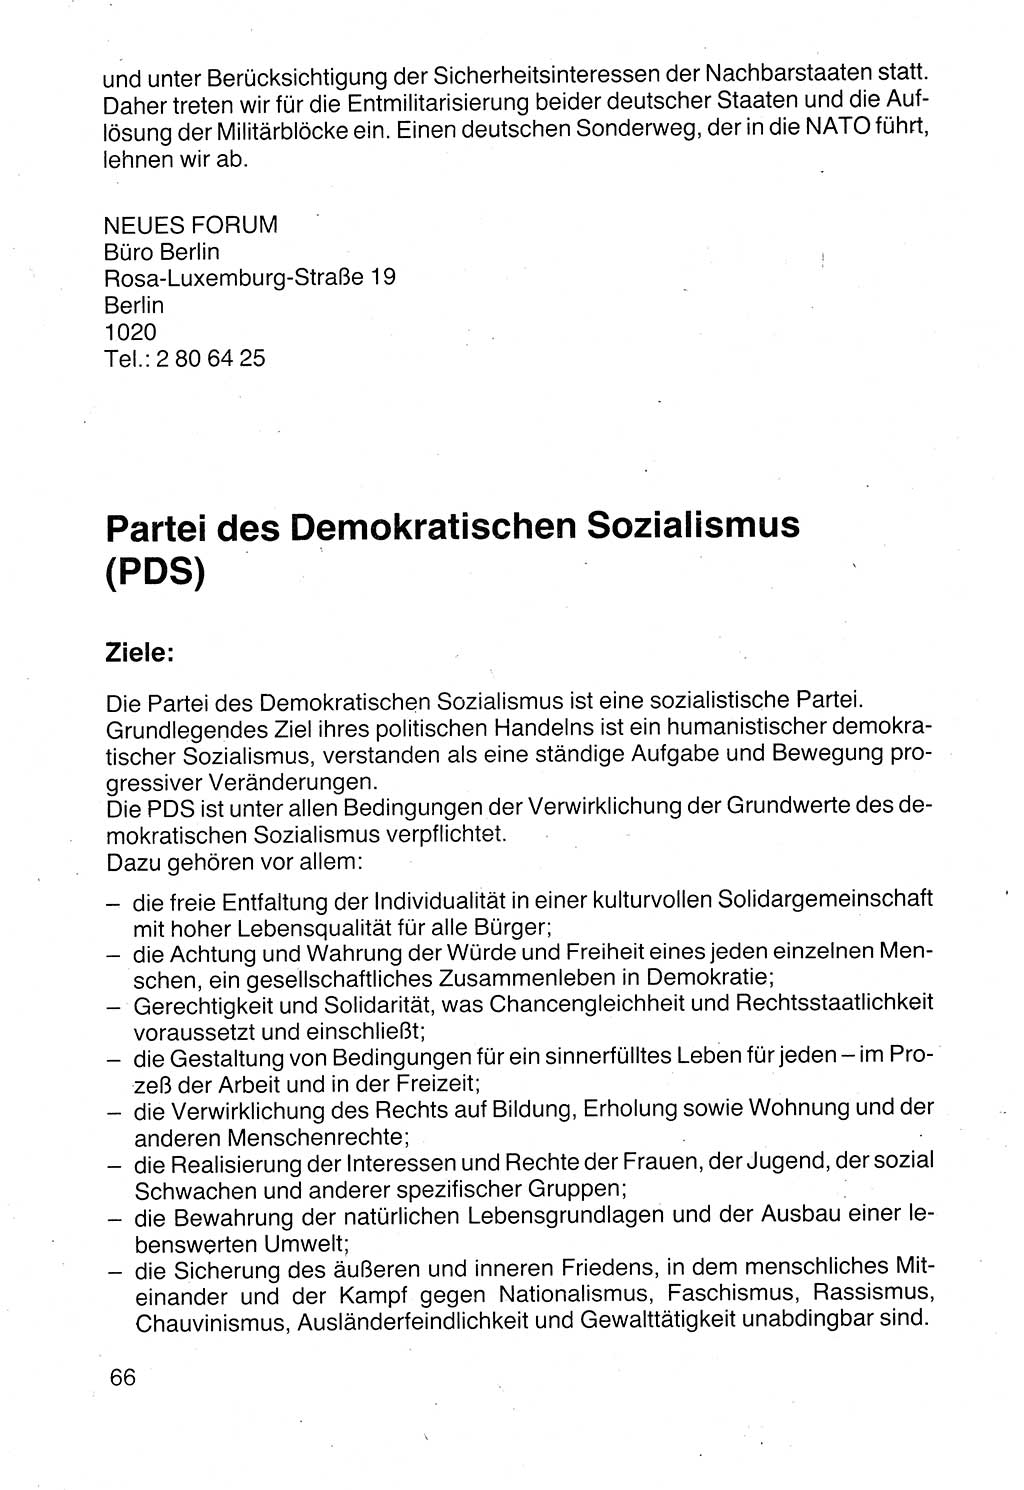 Politische Parteien und Bewegungen der DDR (Deutsche Demokratische Republik) über sich selbst 1990, Seite 66 (Pol. Part. Bew. DDR 1990, S. 66)